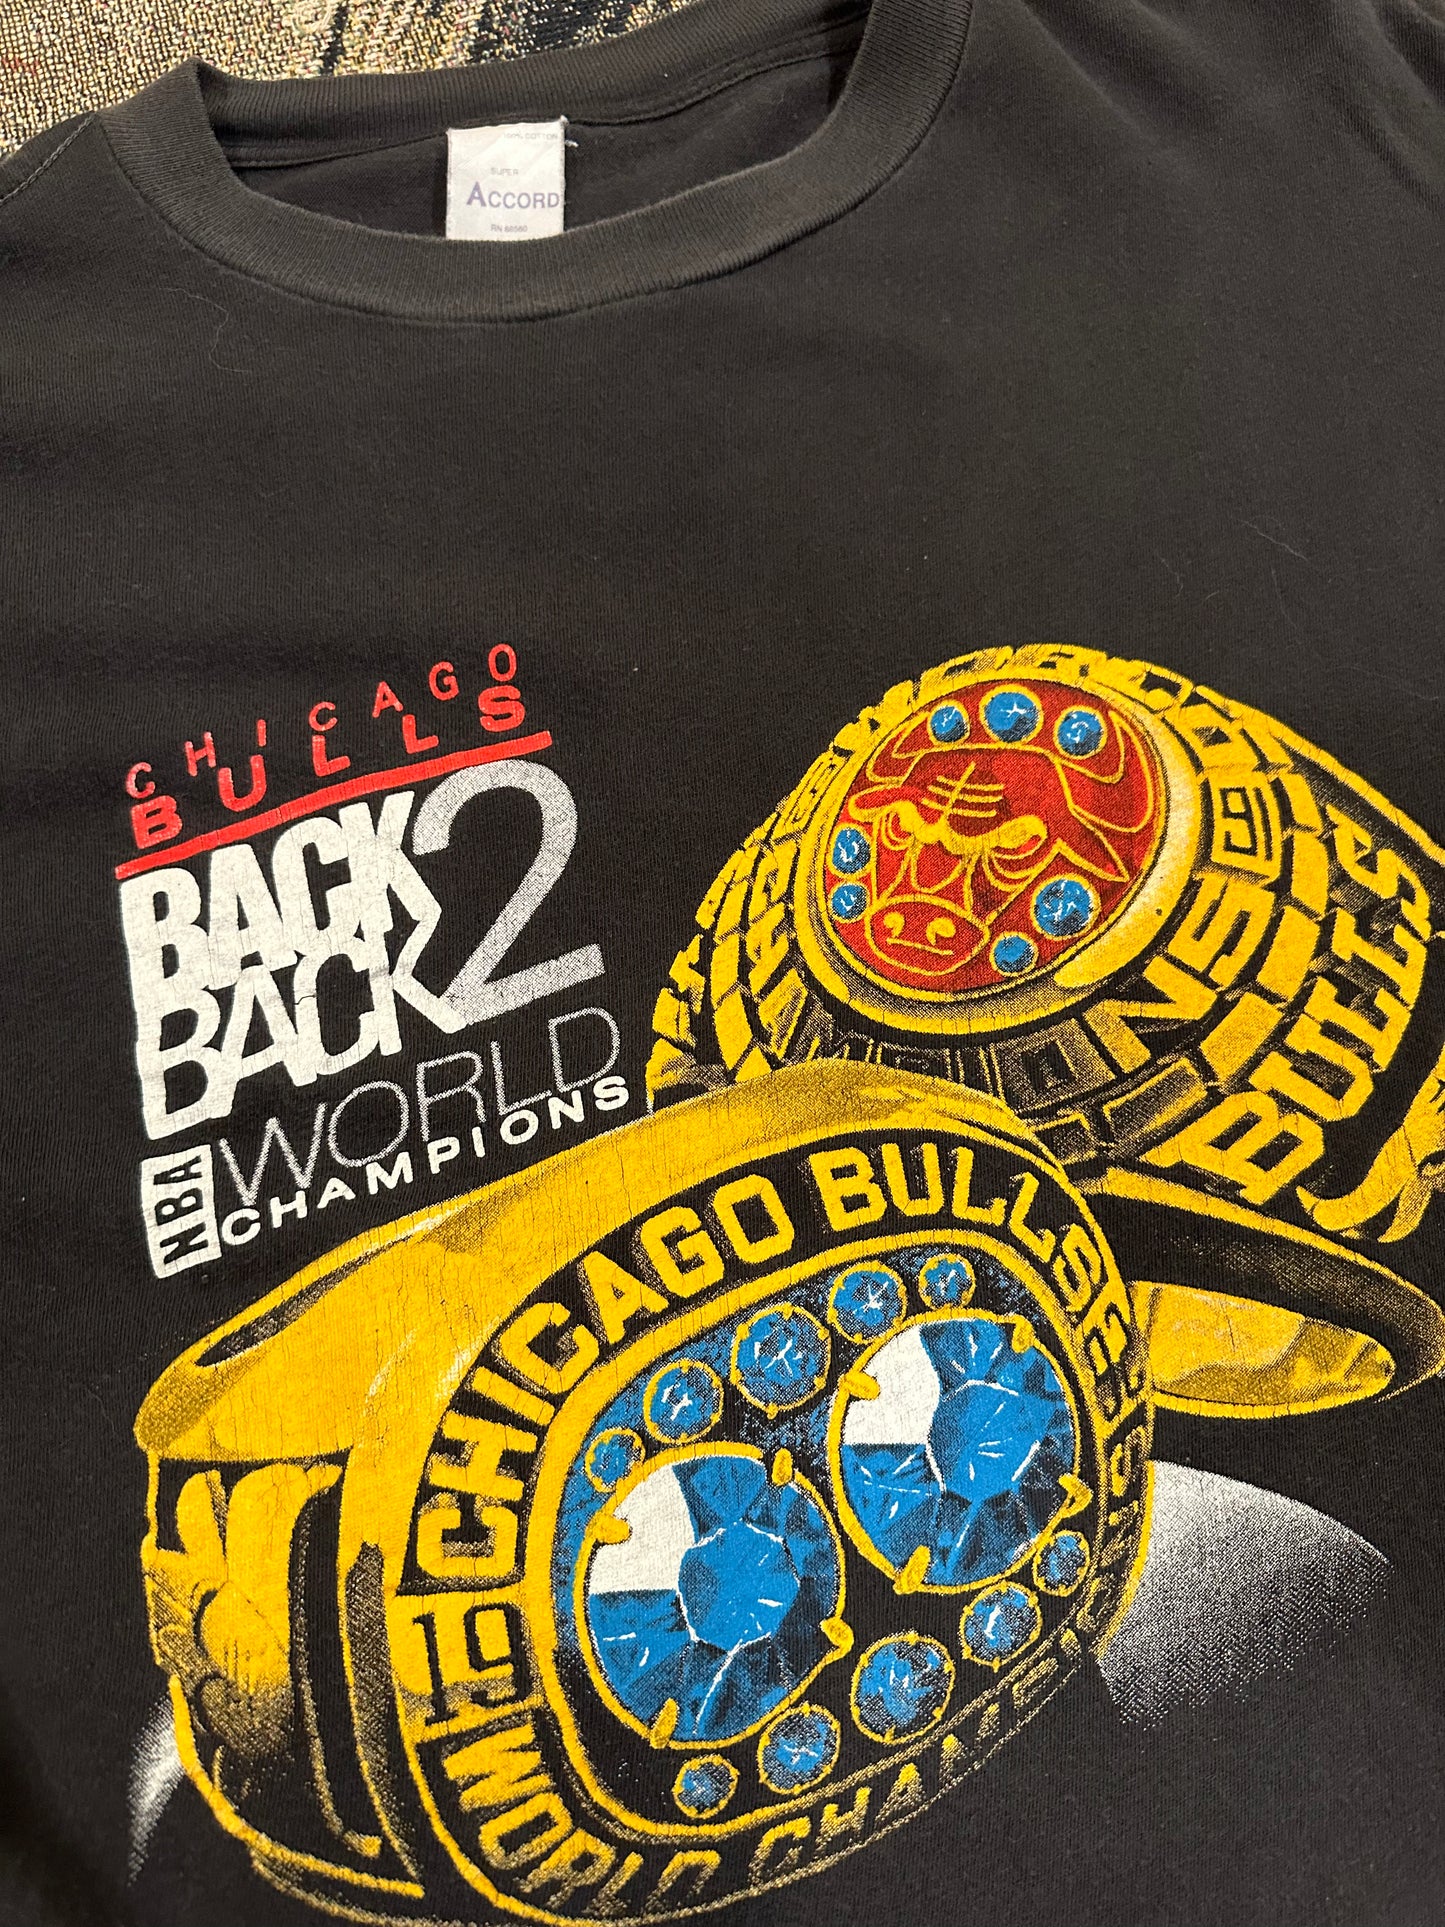 Vintage Chicago bull shirt 1992